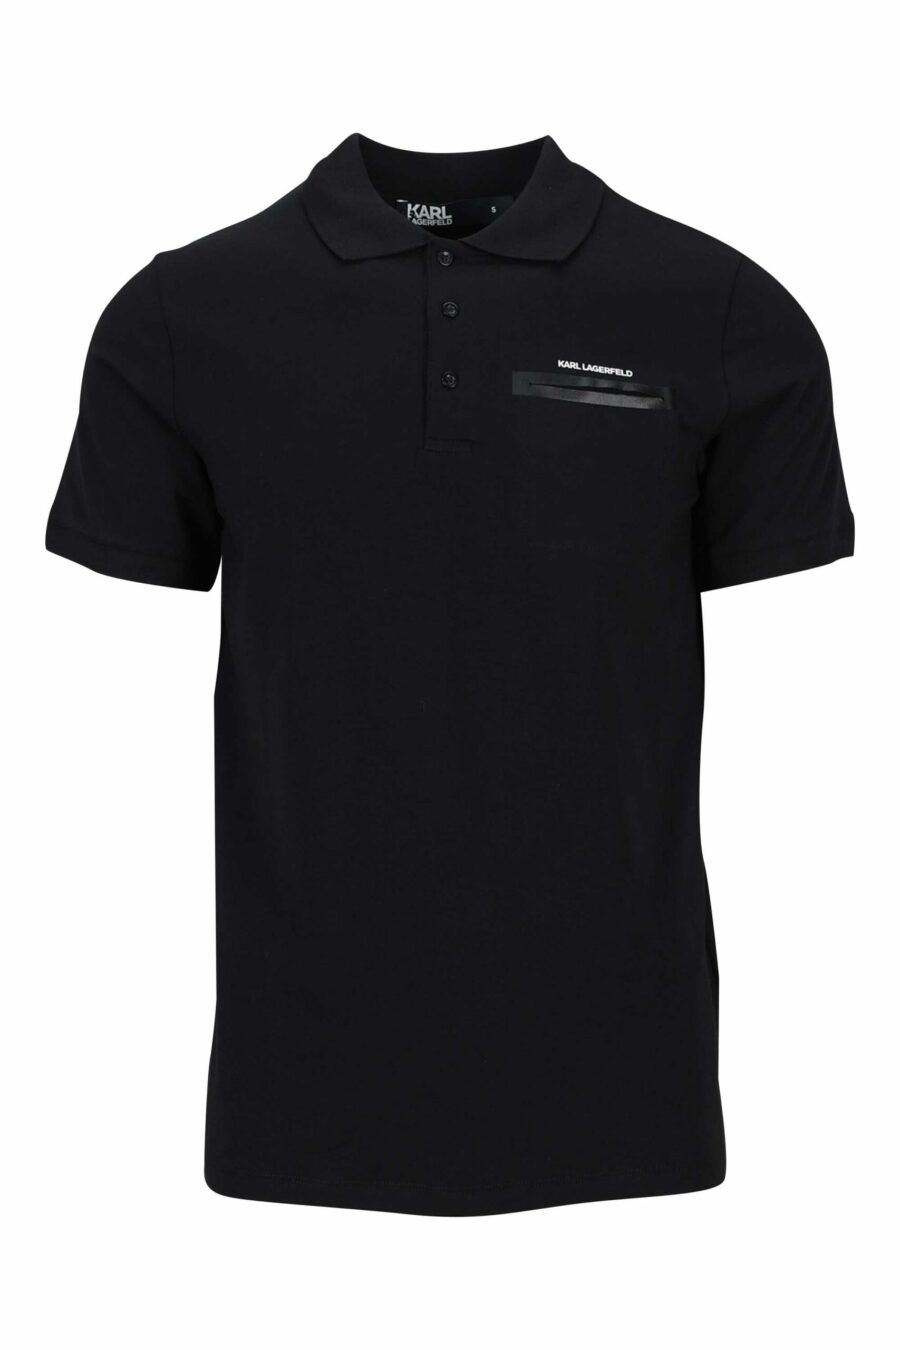 Schwarzes Poloshirt mit schwarzem, glänzendem Logo - 4062226664301 1 skaliert